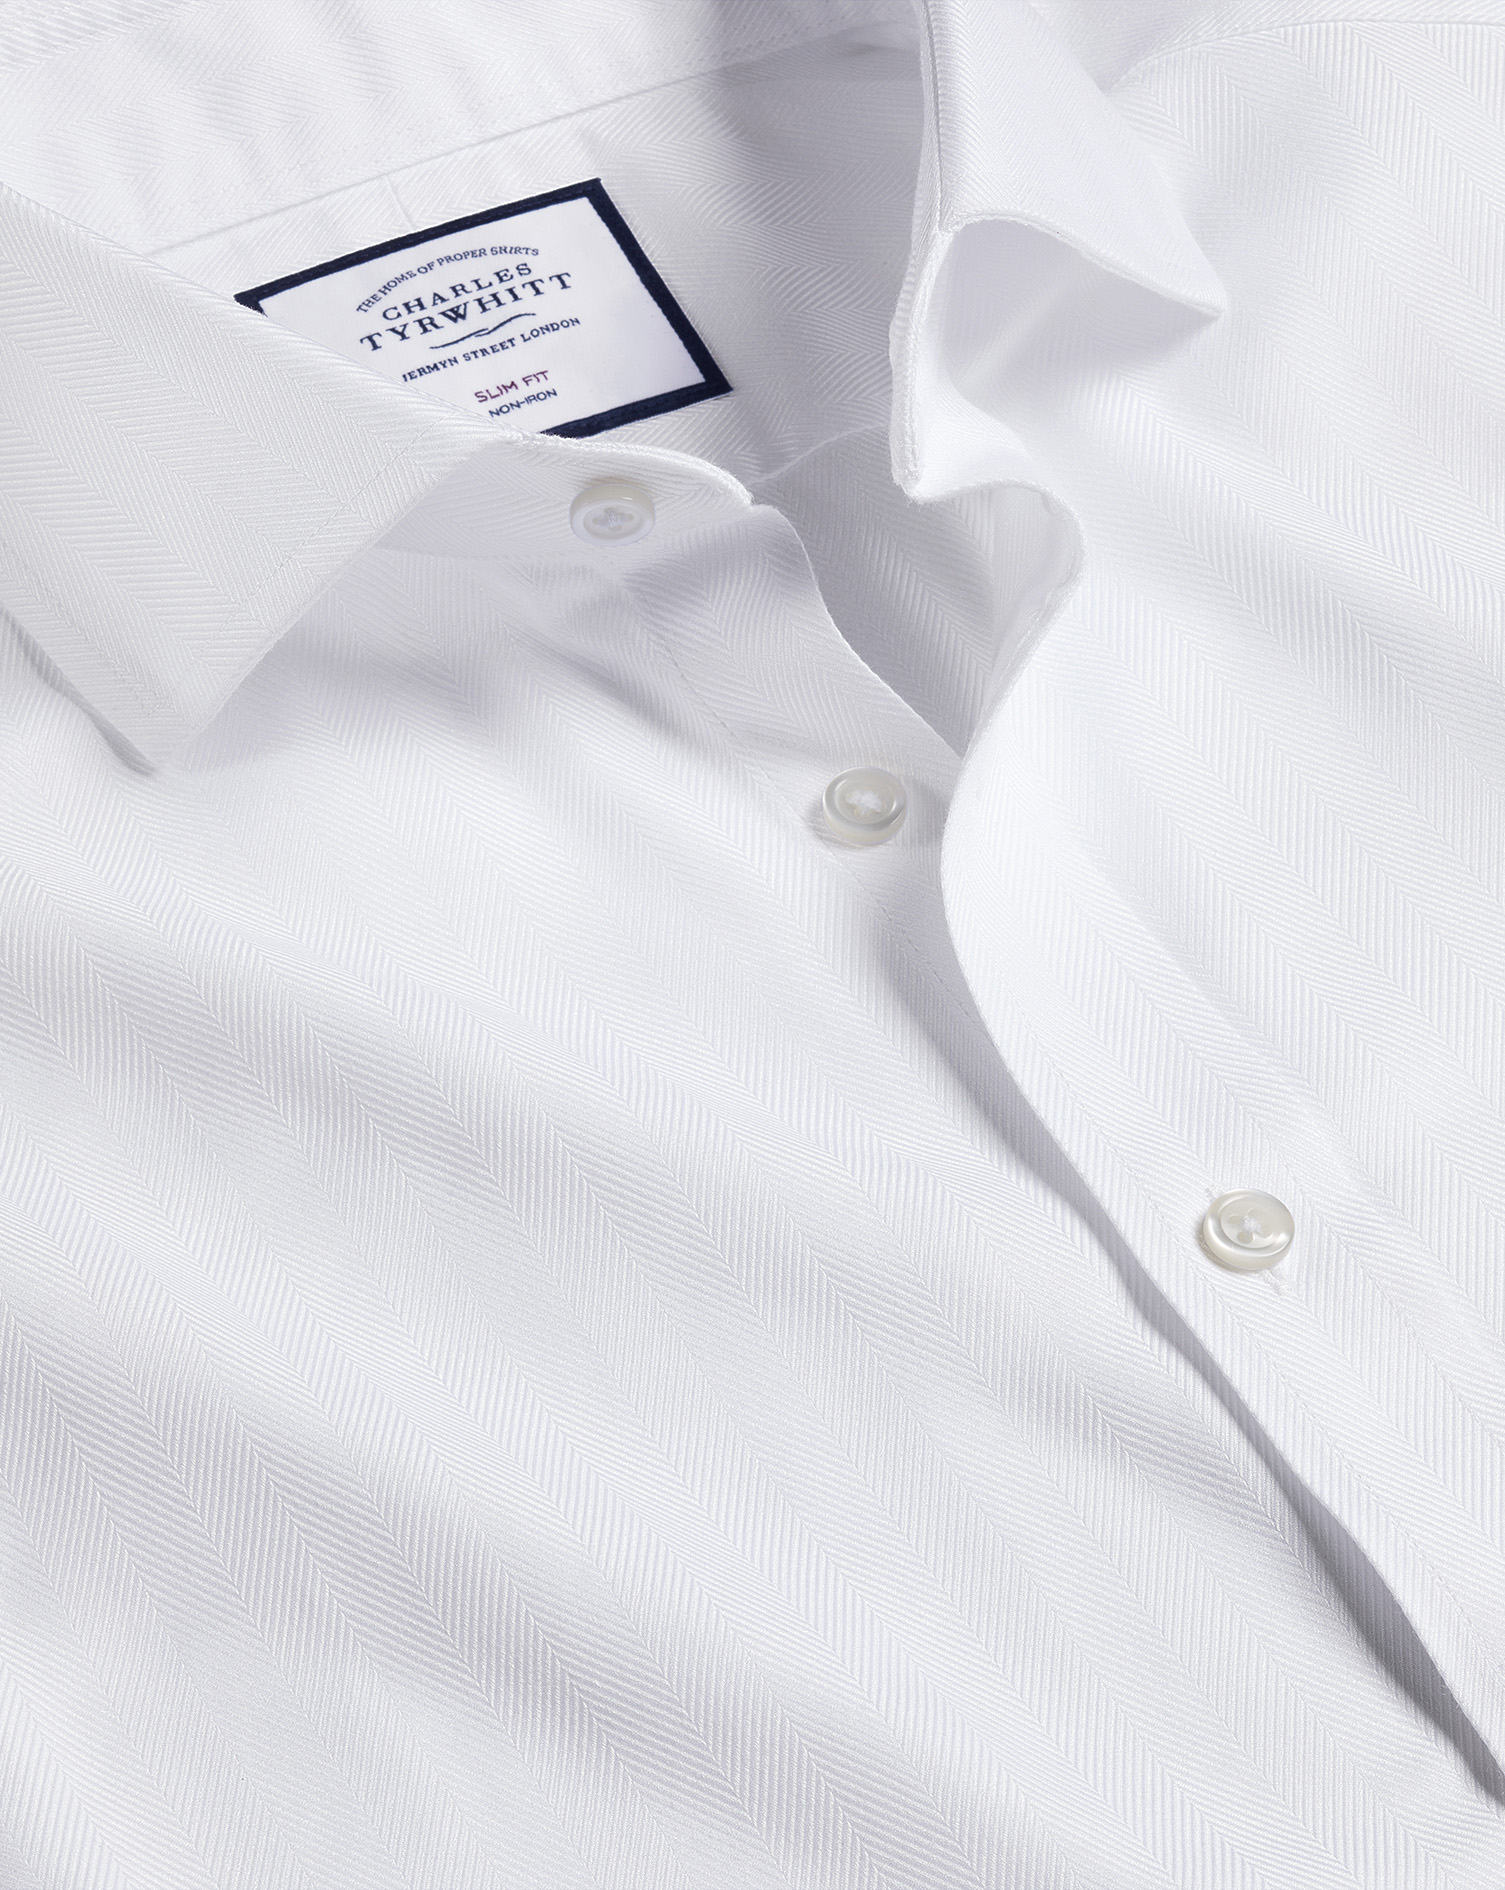 Men's Charles Tyrwhitt Cutaway Collar Non-Iron Herringbone Dress Shirt - White French Cuff Size Larg